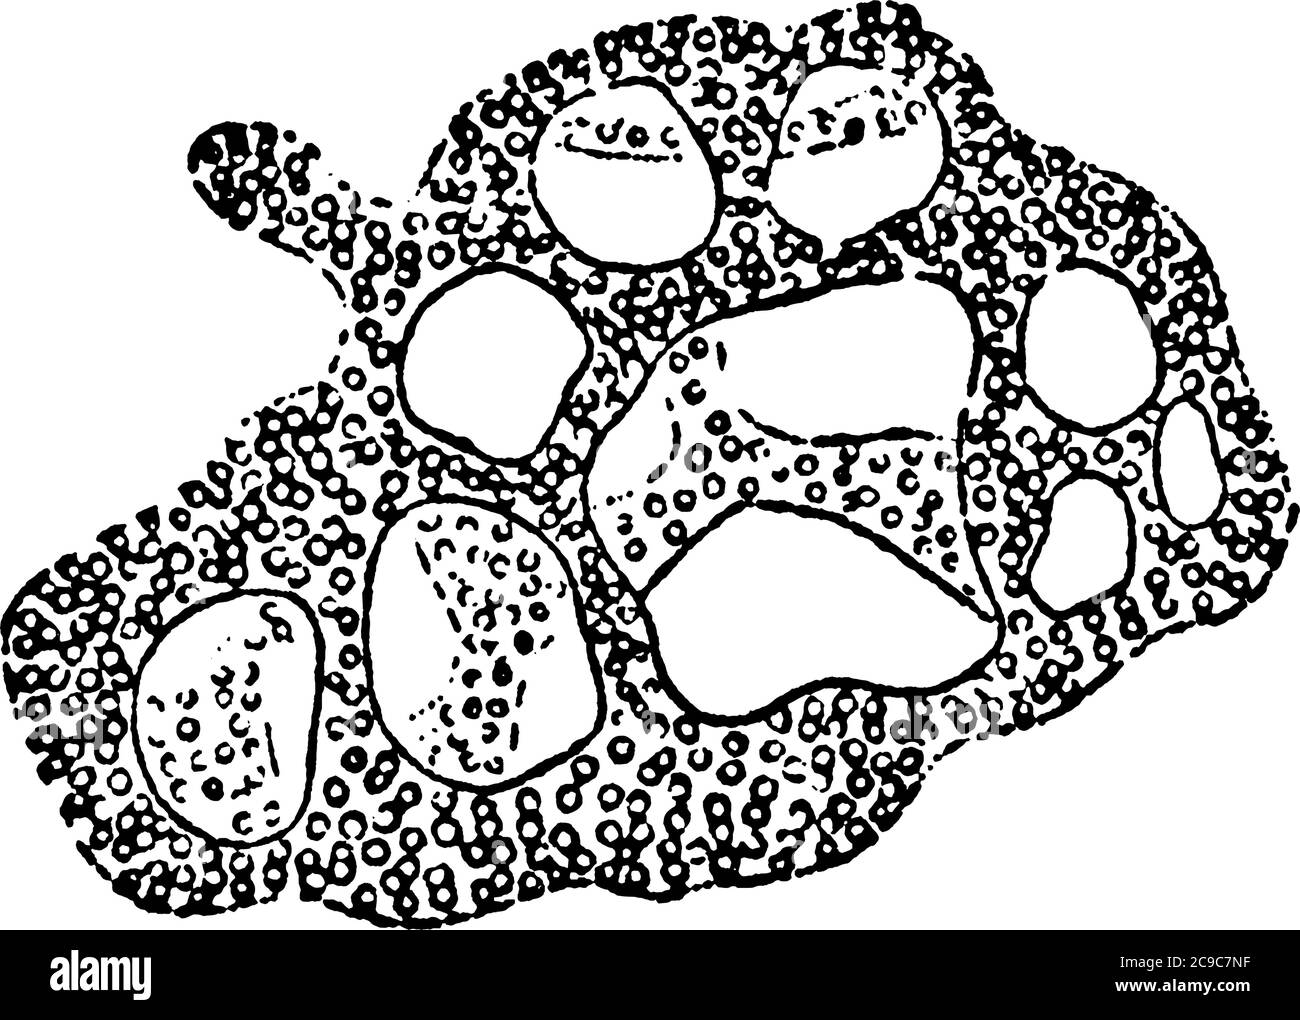 Eine typische Darstellung der eiförmigen Masse der Zoogloea von BReticulate zoogloea. Die gallertartigen geschwollenen Wände der großen überfüllten Kokken sind verschmolzen Stock Vektor